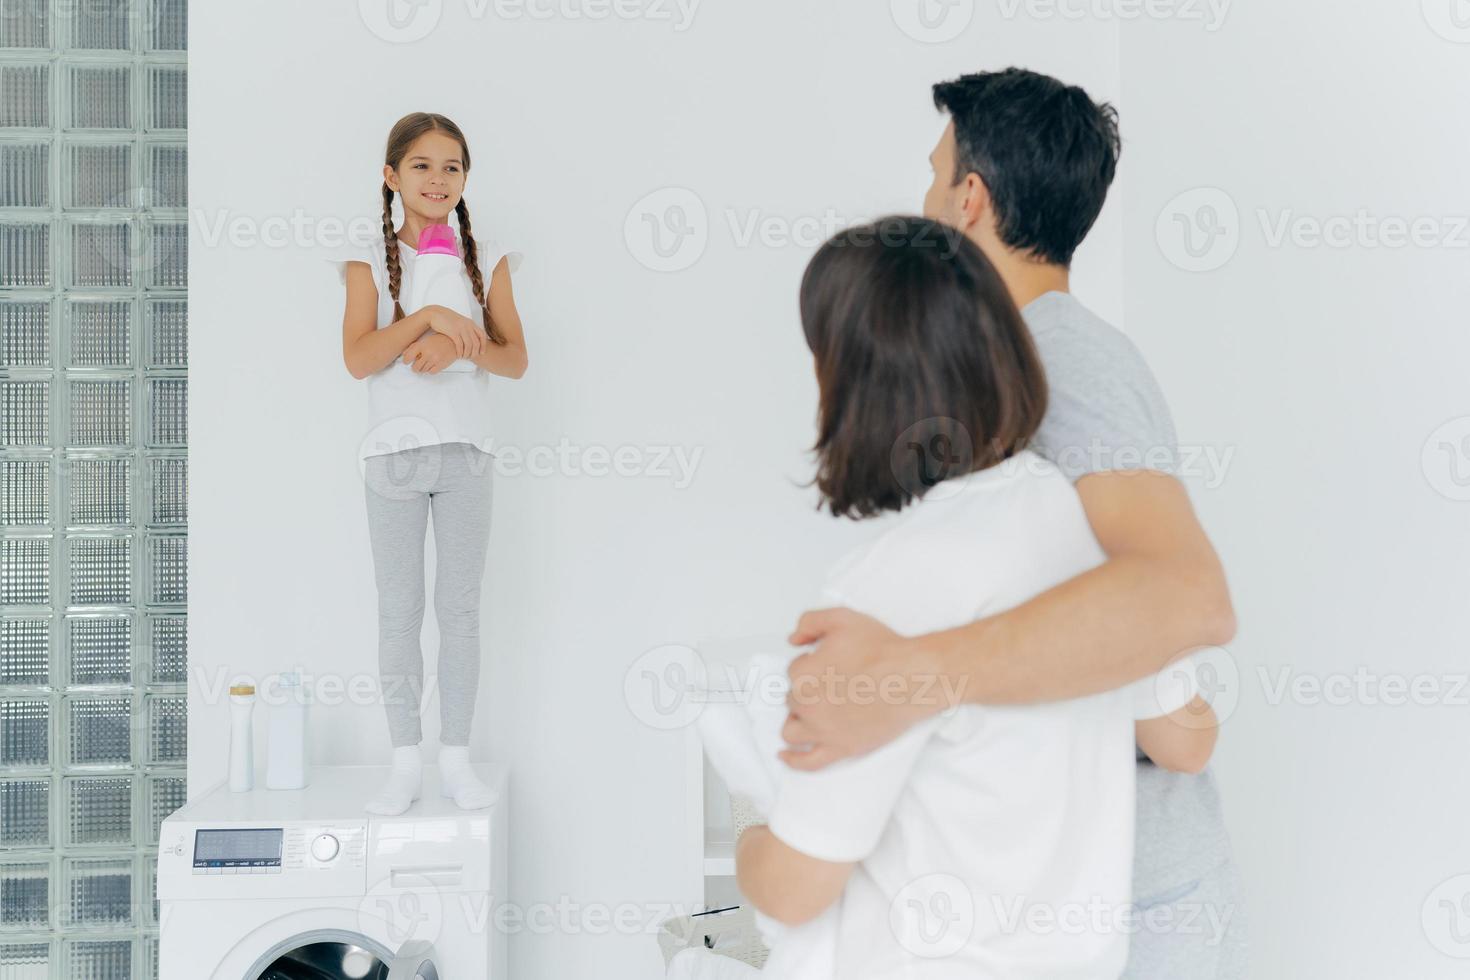 achteraanzicht van man en vrouw omhelzen en praten met een klein meisje dat op de wasmachine staat met een fles afwasmiddel, samen wassen tijdens de vrije dag, veel werk aan huis hebben. wasdag, thuisroutine foto